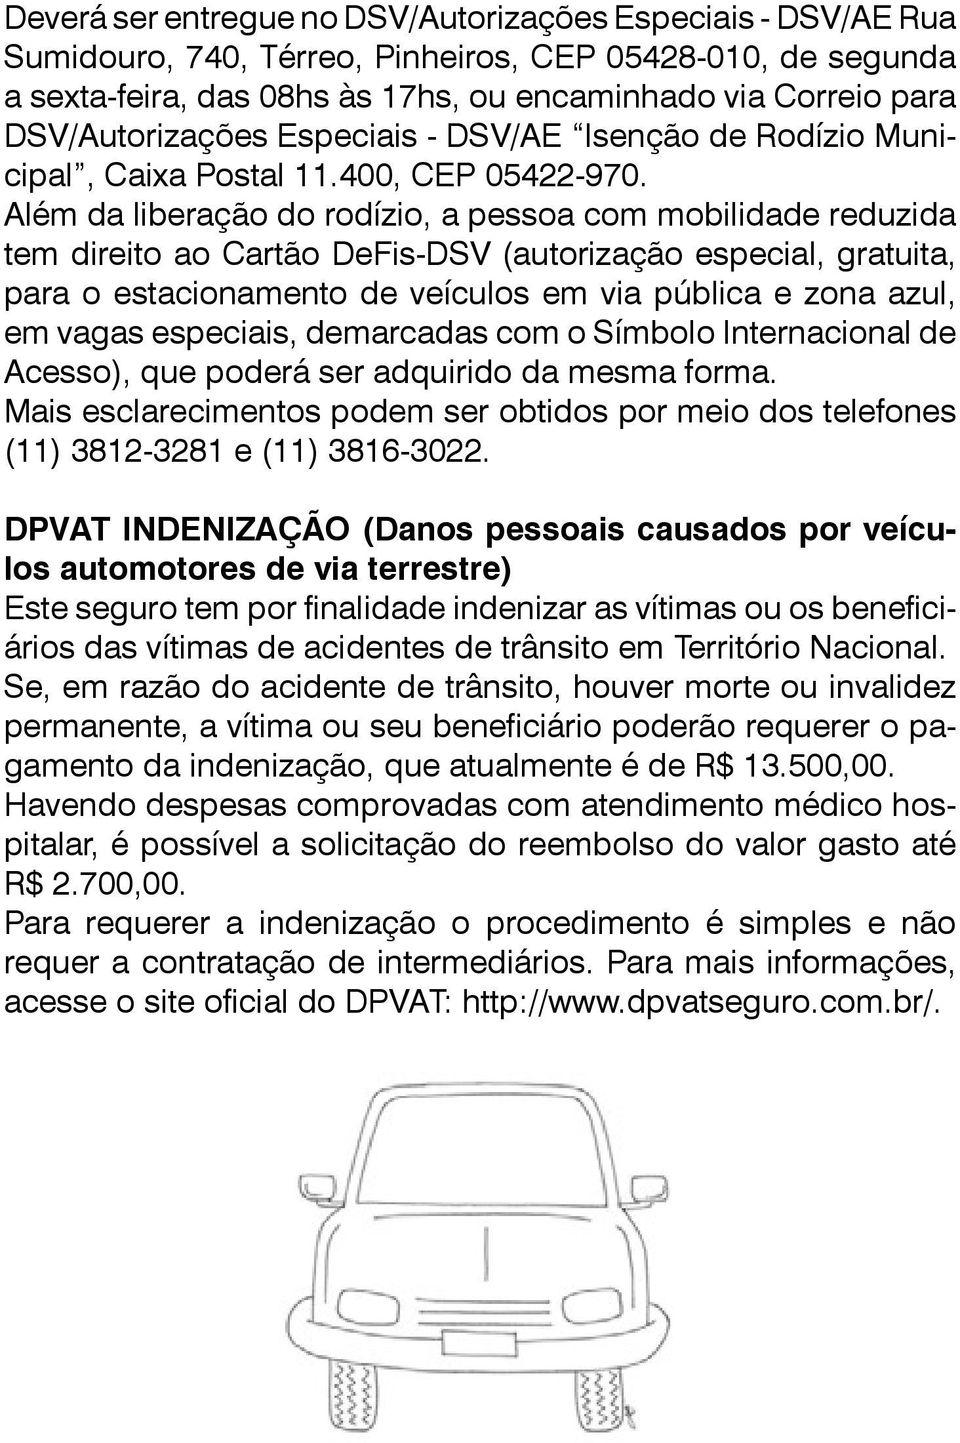 Além da liberação do rodízio, a pessoa com mobilidade reduzida tem direito ao Cartão DeFis-DSV (autorização especial, gratuita, para o estacionamento de veículos em via pública e zona azul, em vagas